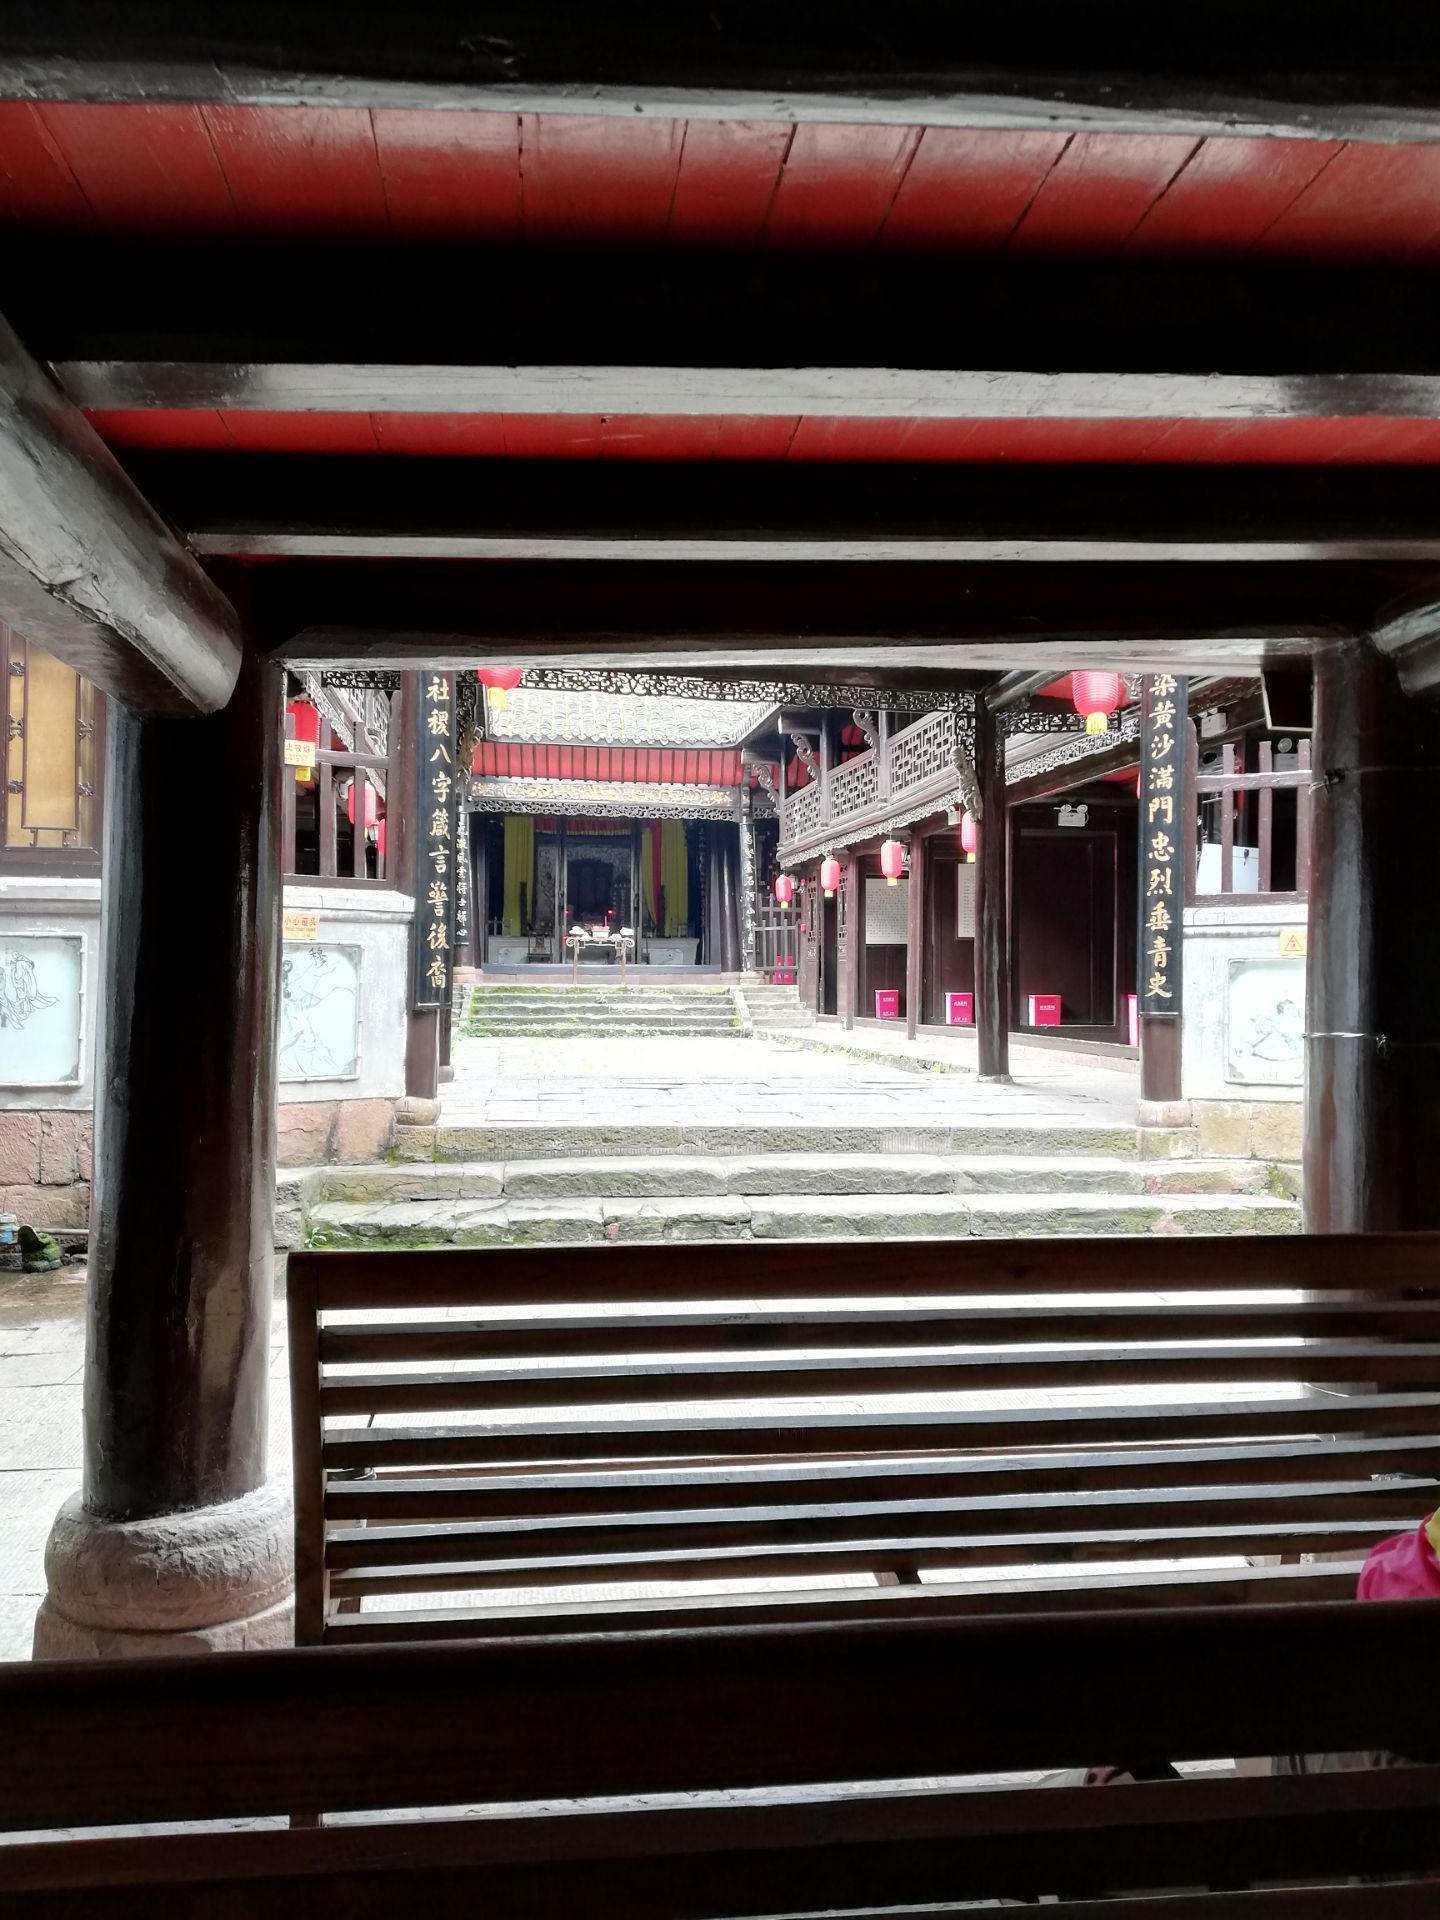 【携程攻略】凤凰杨家祠堂景点,凤凰古城的杨家调堂是古城的收费景点